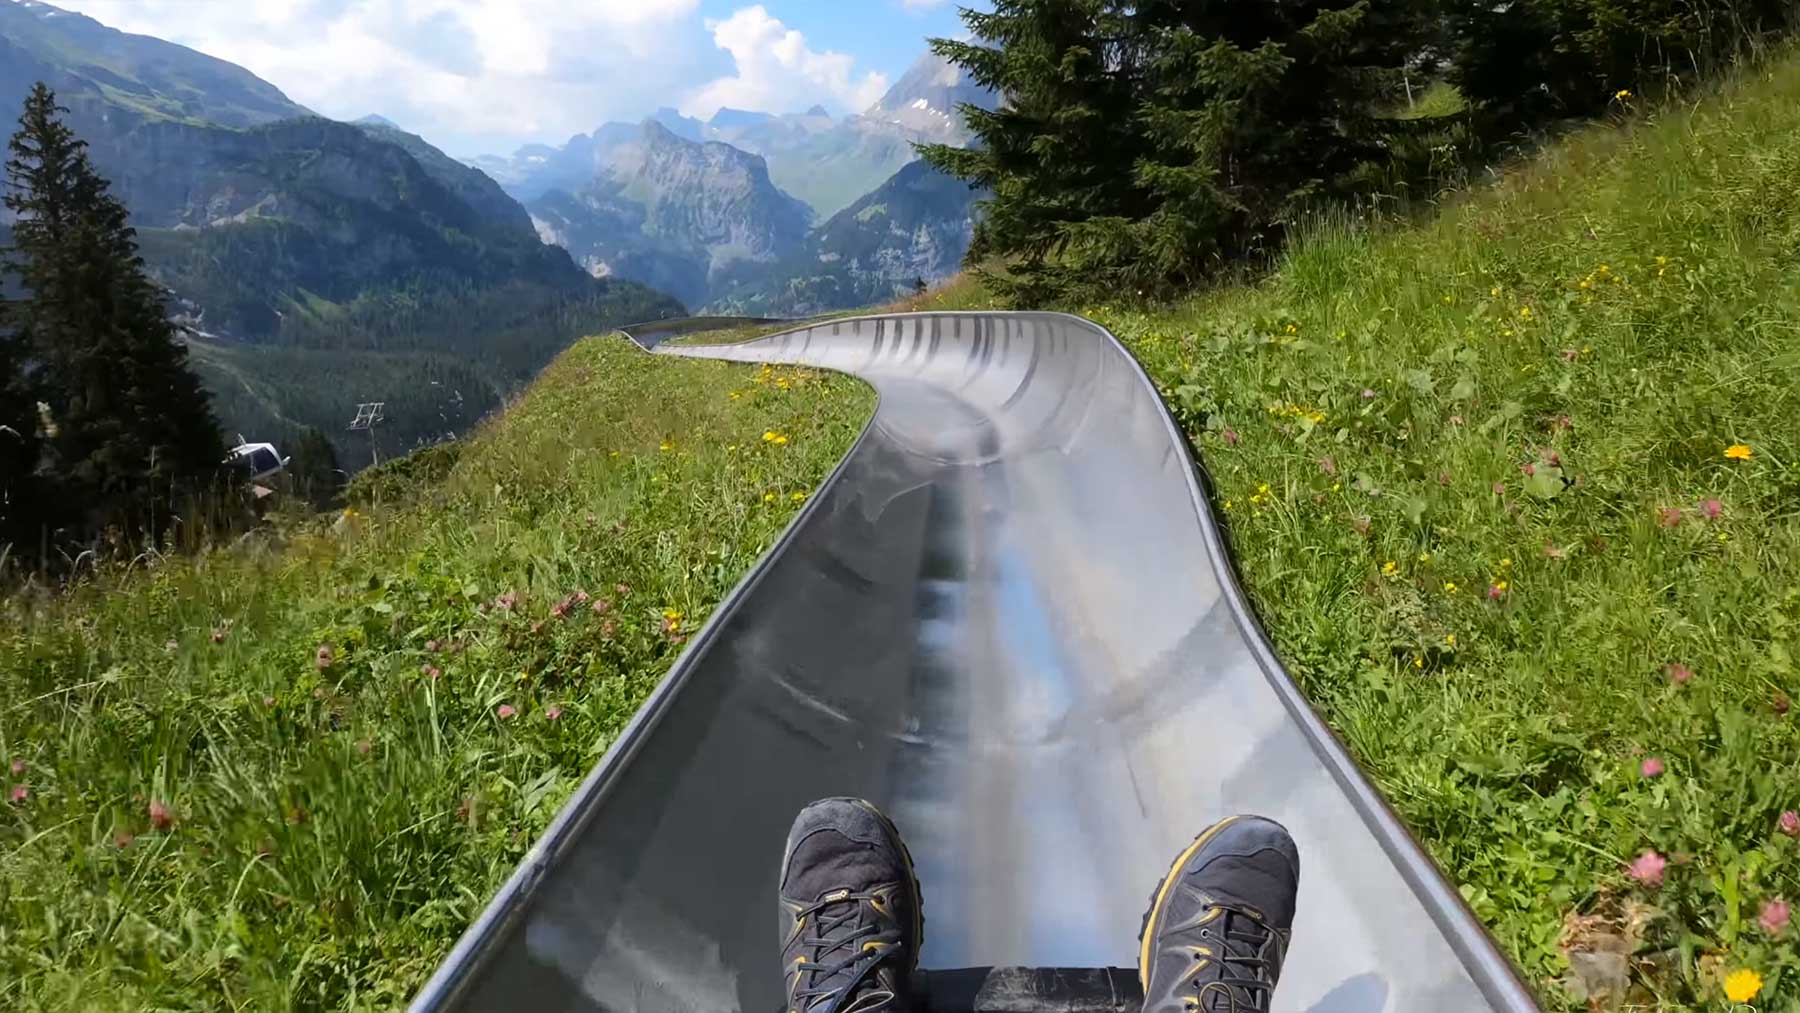 Sommerrodelbahn-Fahrt durch Schweizer Berge